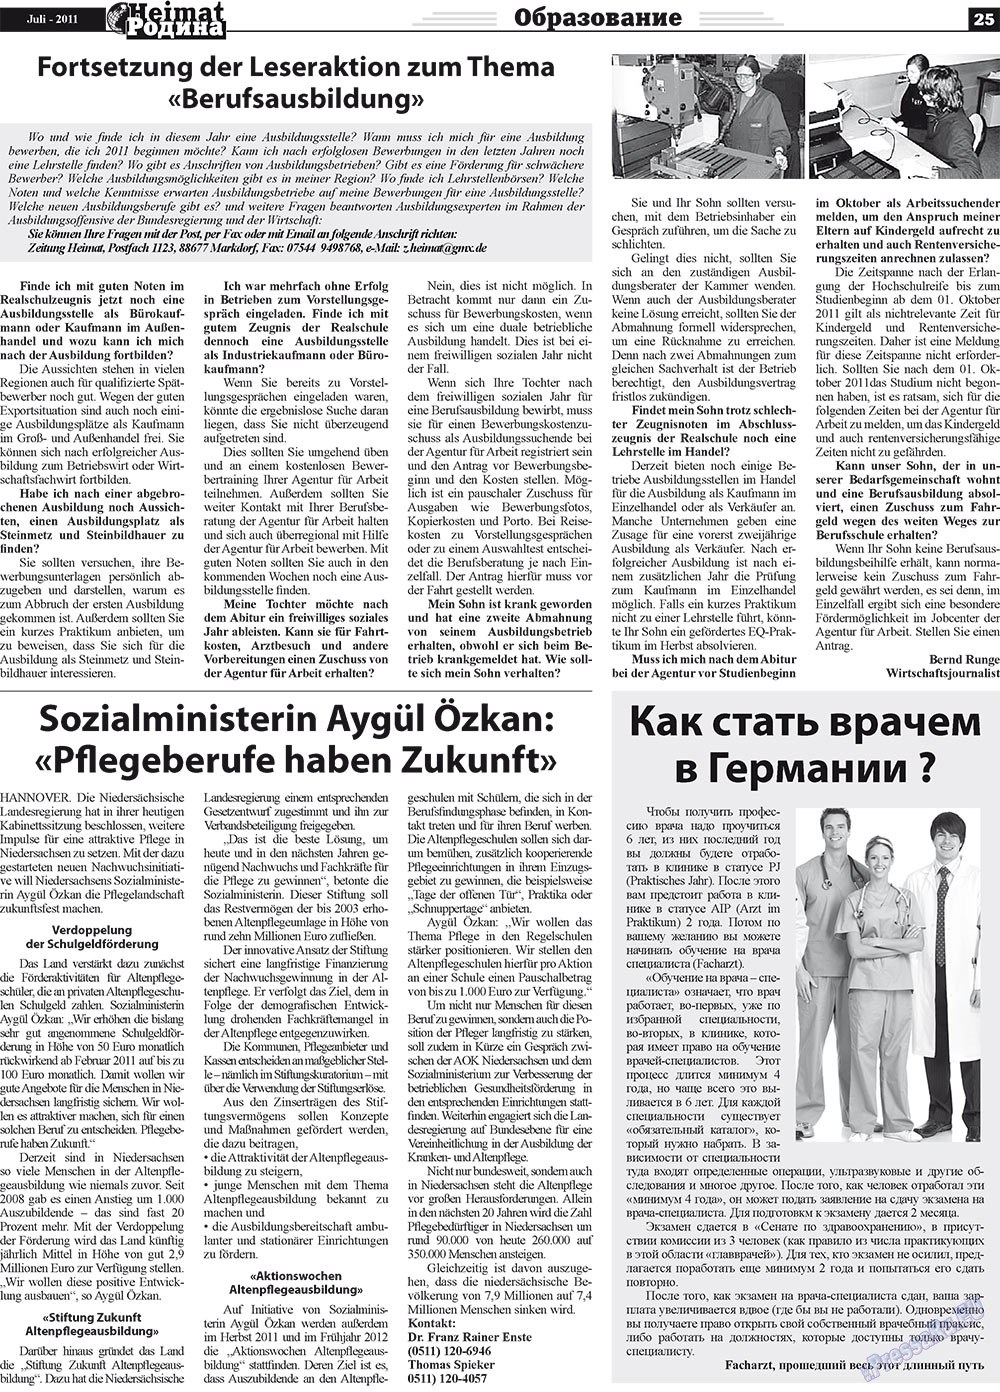 Heimat-Родина (газета). 2011 год, номер 7, стр. 25